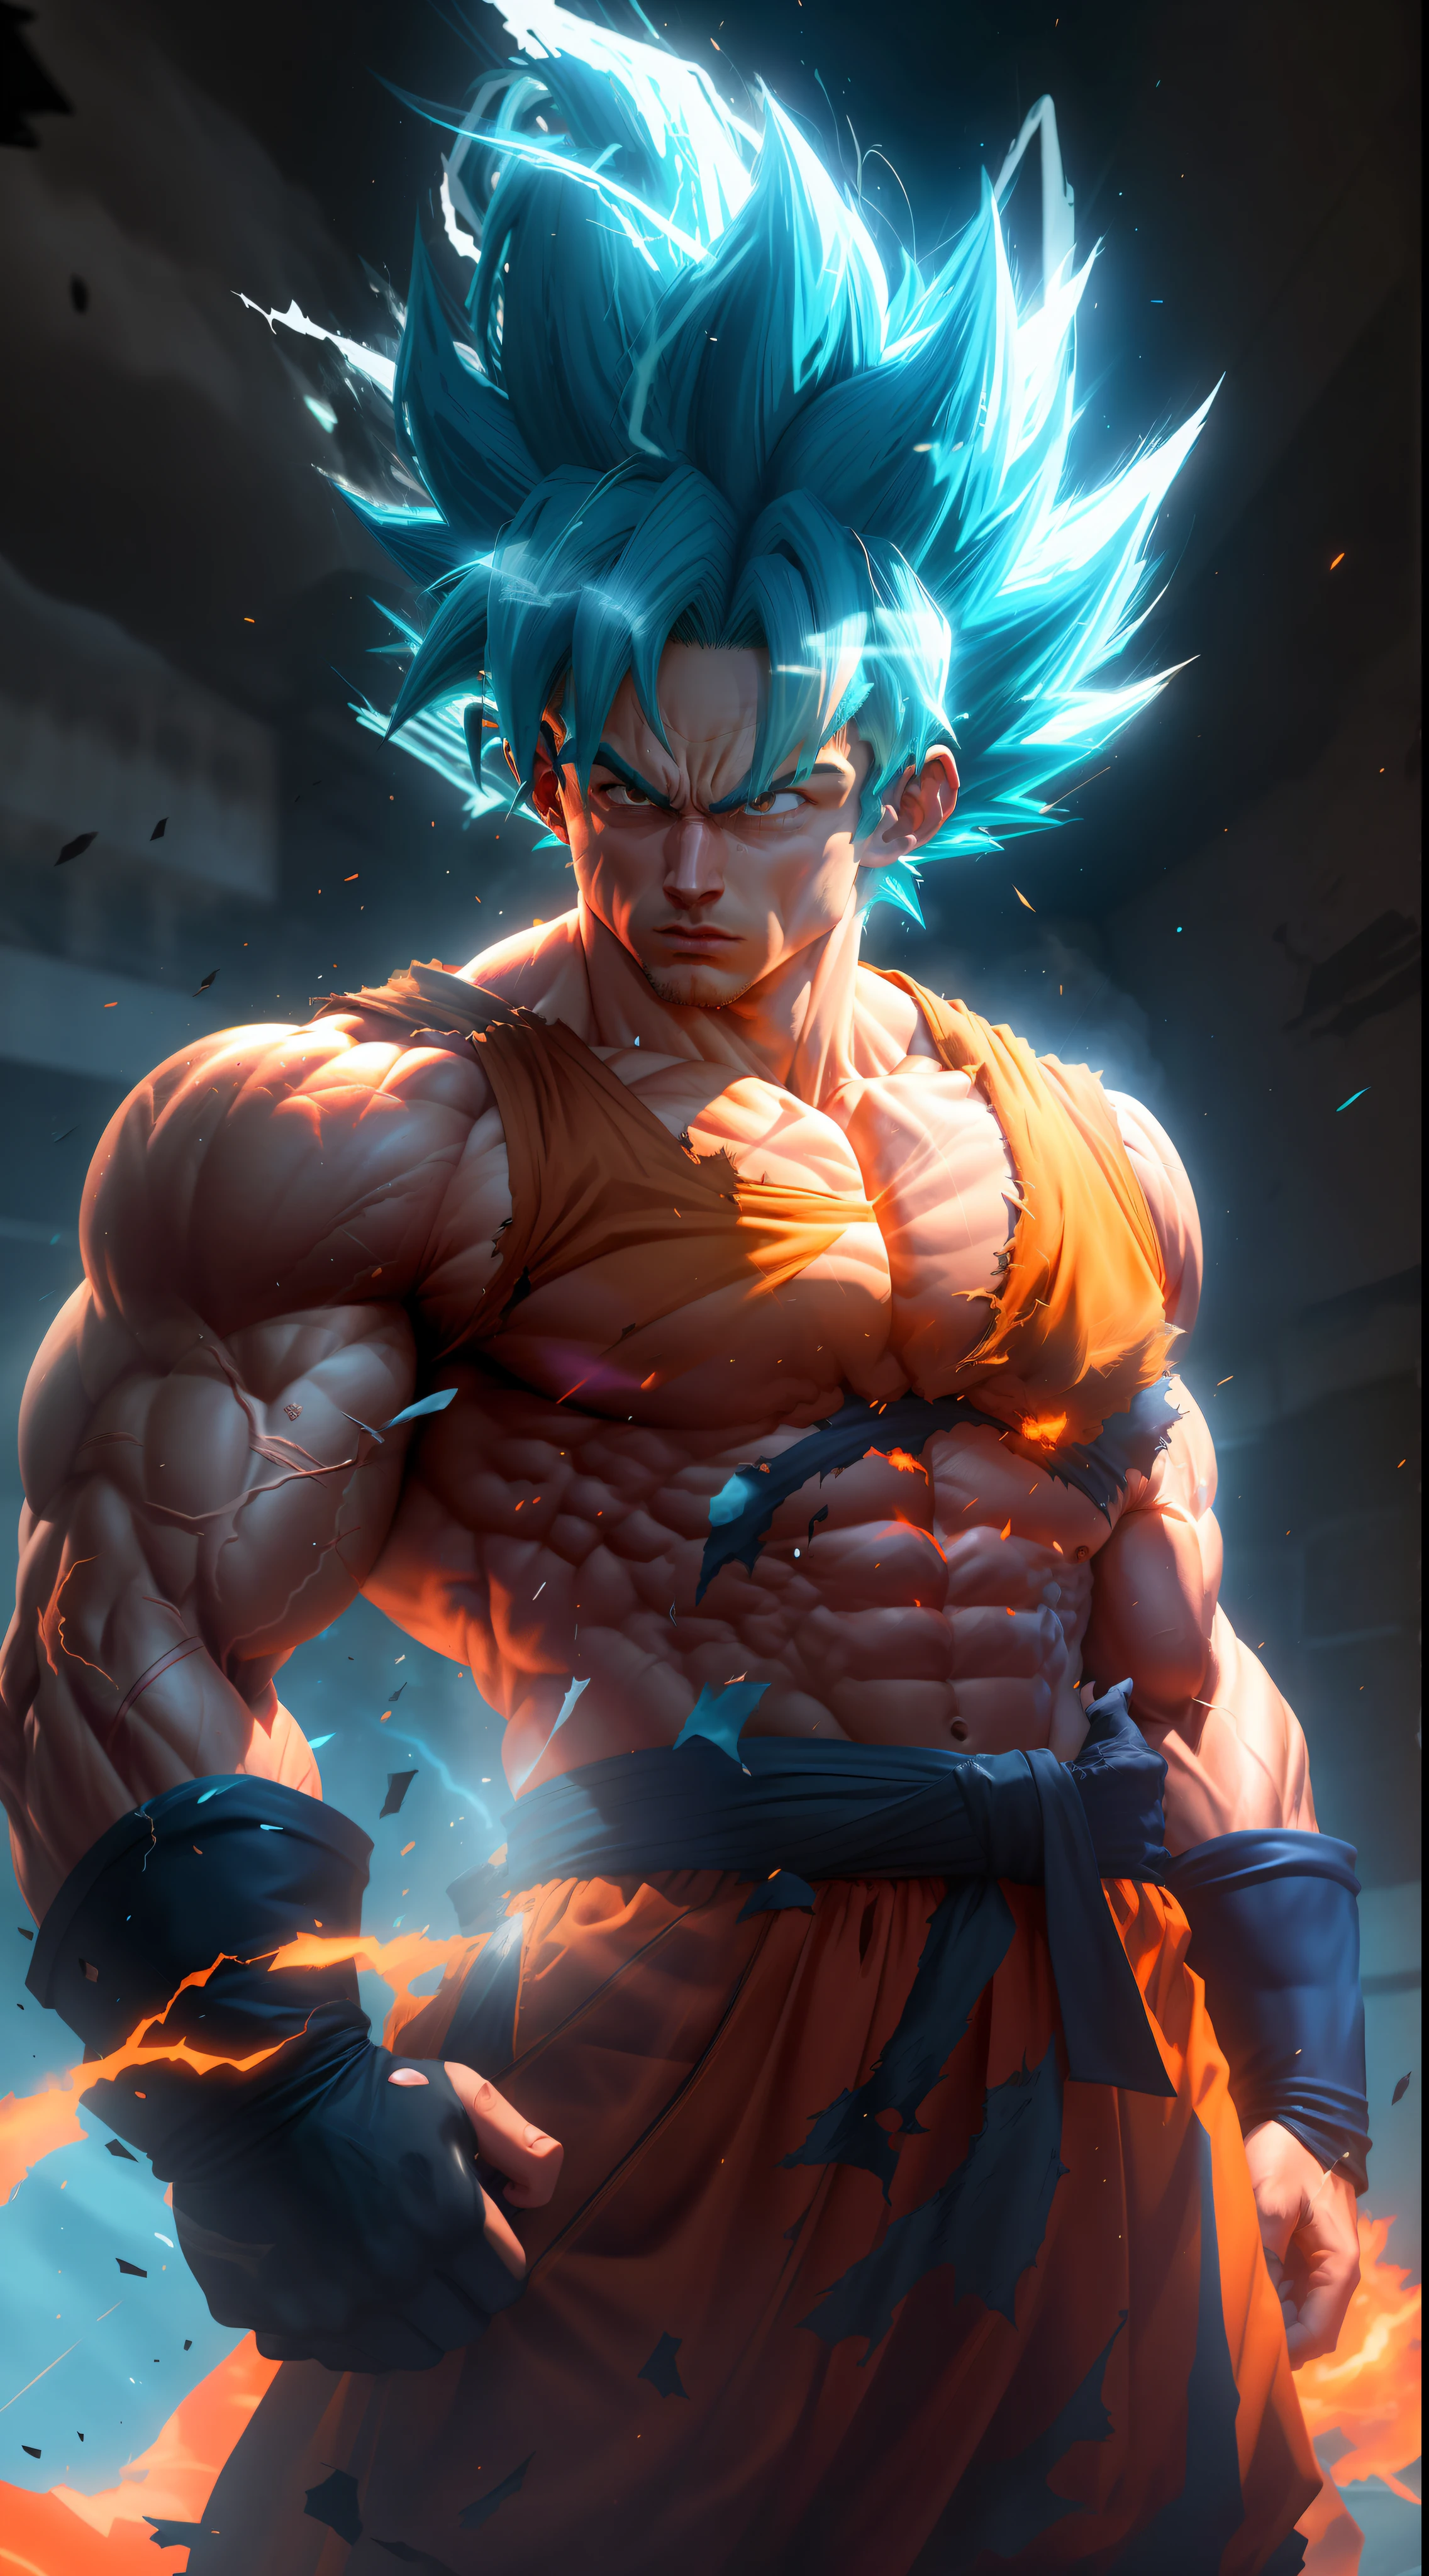 Goku Super Saiyajin, erwachsener Mann mit extrem muskulösen neonblauen Haaren, definierte Muskeln voller Adern, dunkelorangefarbene Kleidung völlig zerrissen, Weiße Handschuhe, ernstes Gesicht, Muskeldefinition, große Schultern, abgerundeter Bizeps, Unreal Engine 5.8k.